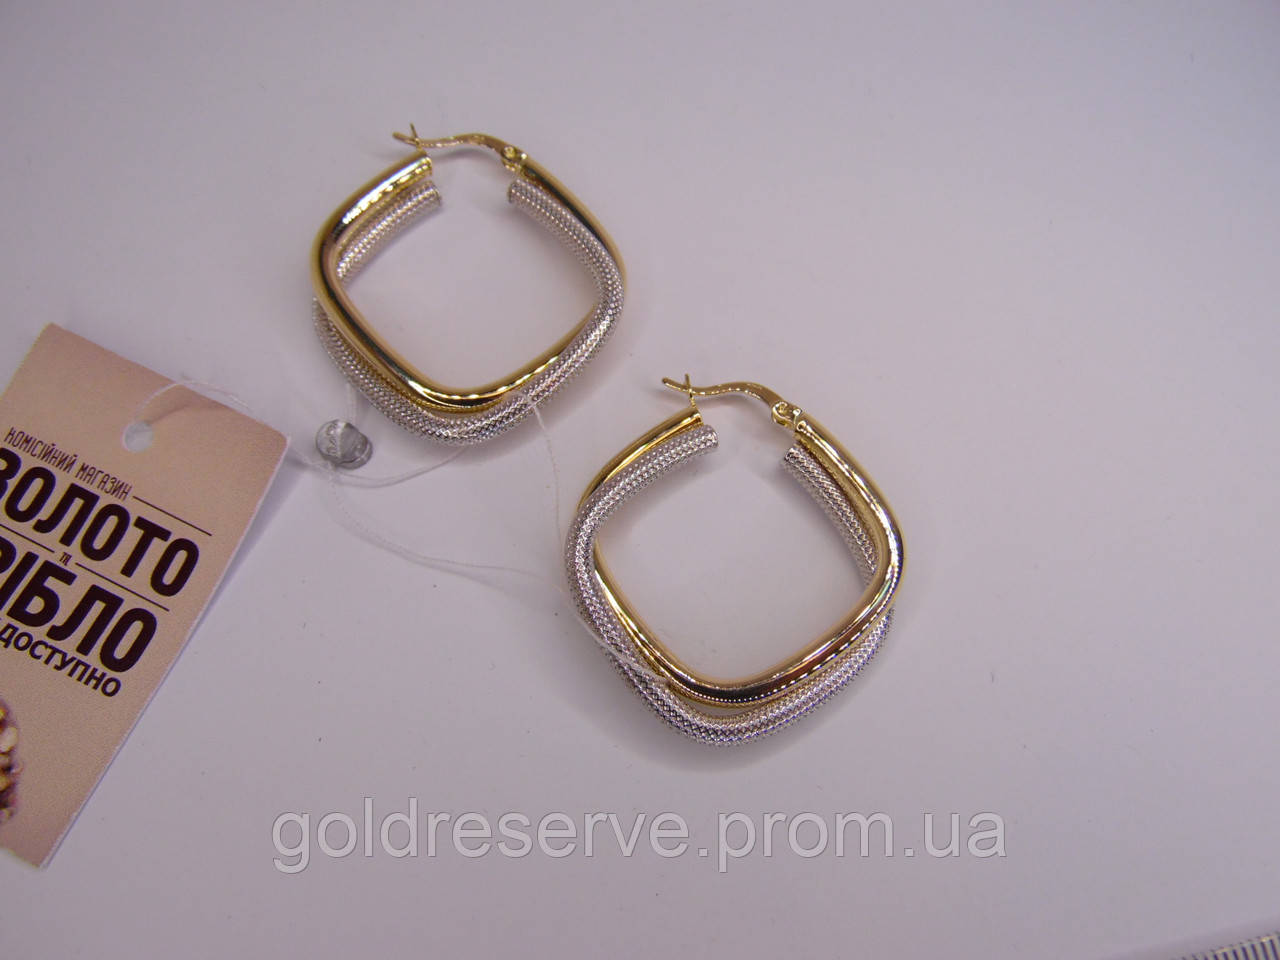 Золоті жіночі сережки кільця (конго), вага 5,77 грам. Діаметр 2 см